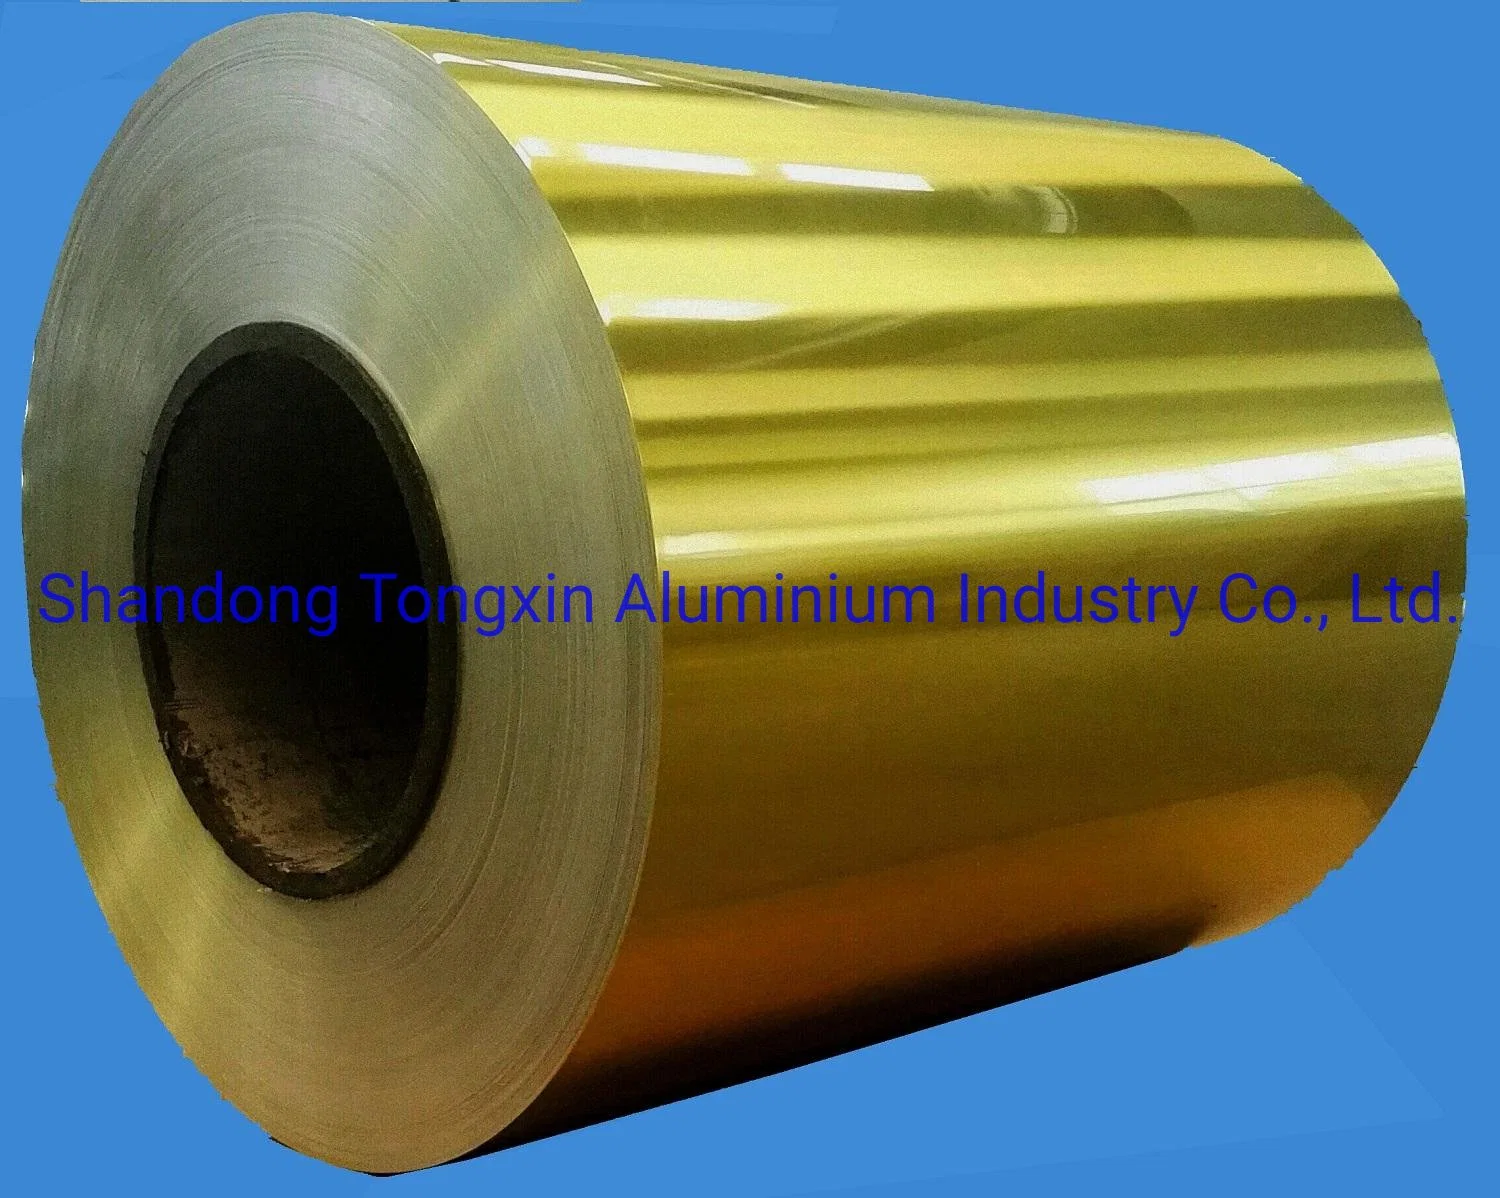 8011 Aluminium Fin Stock for Air Conditioner